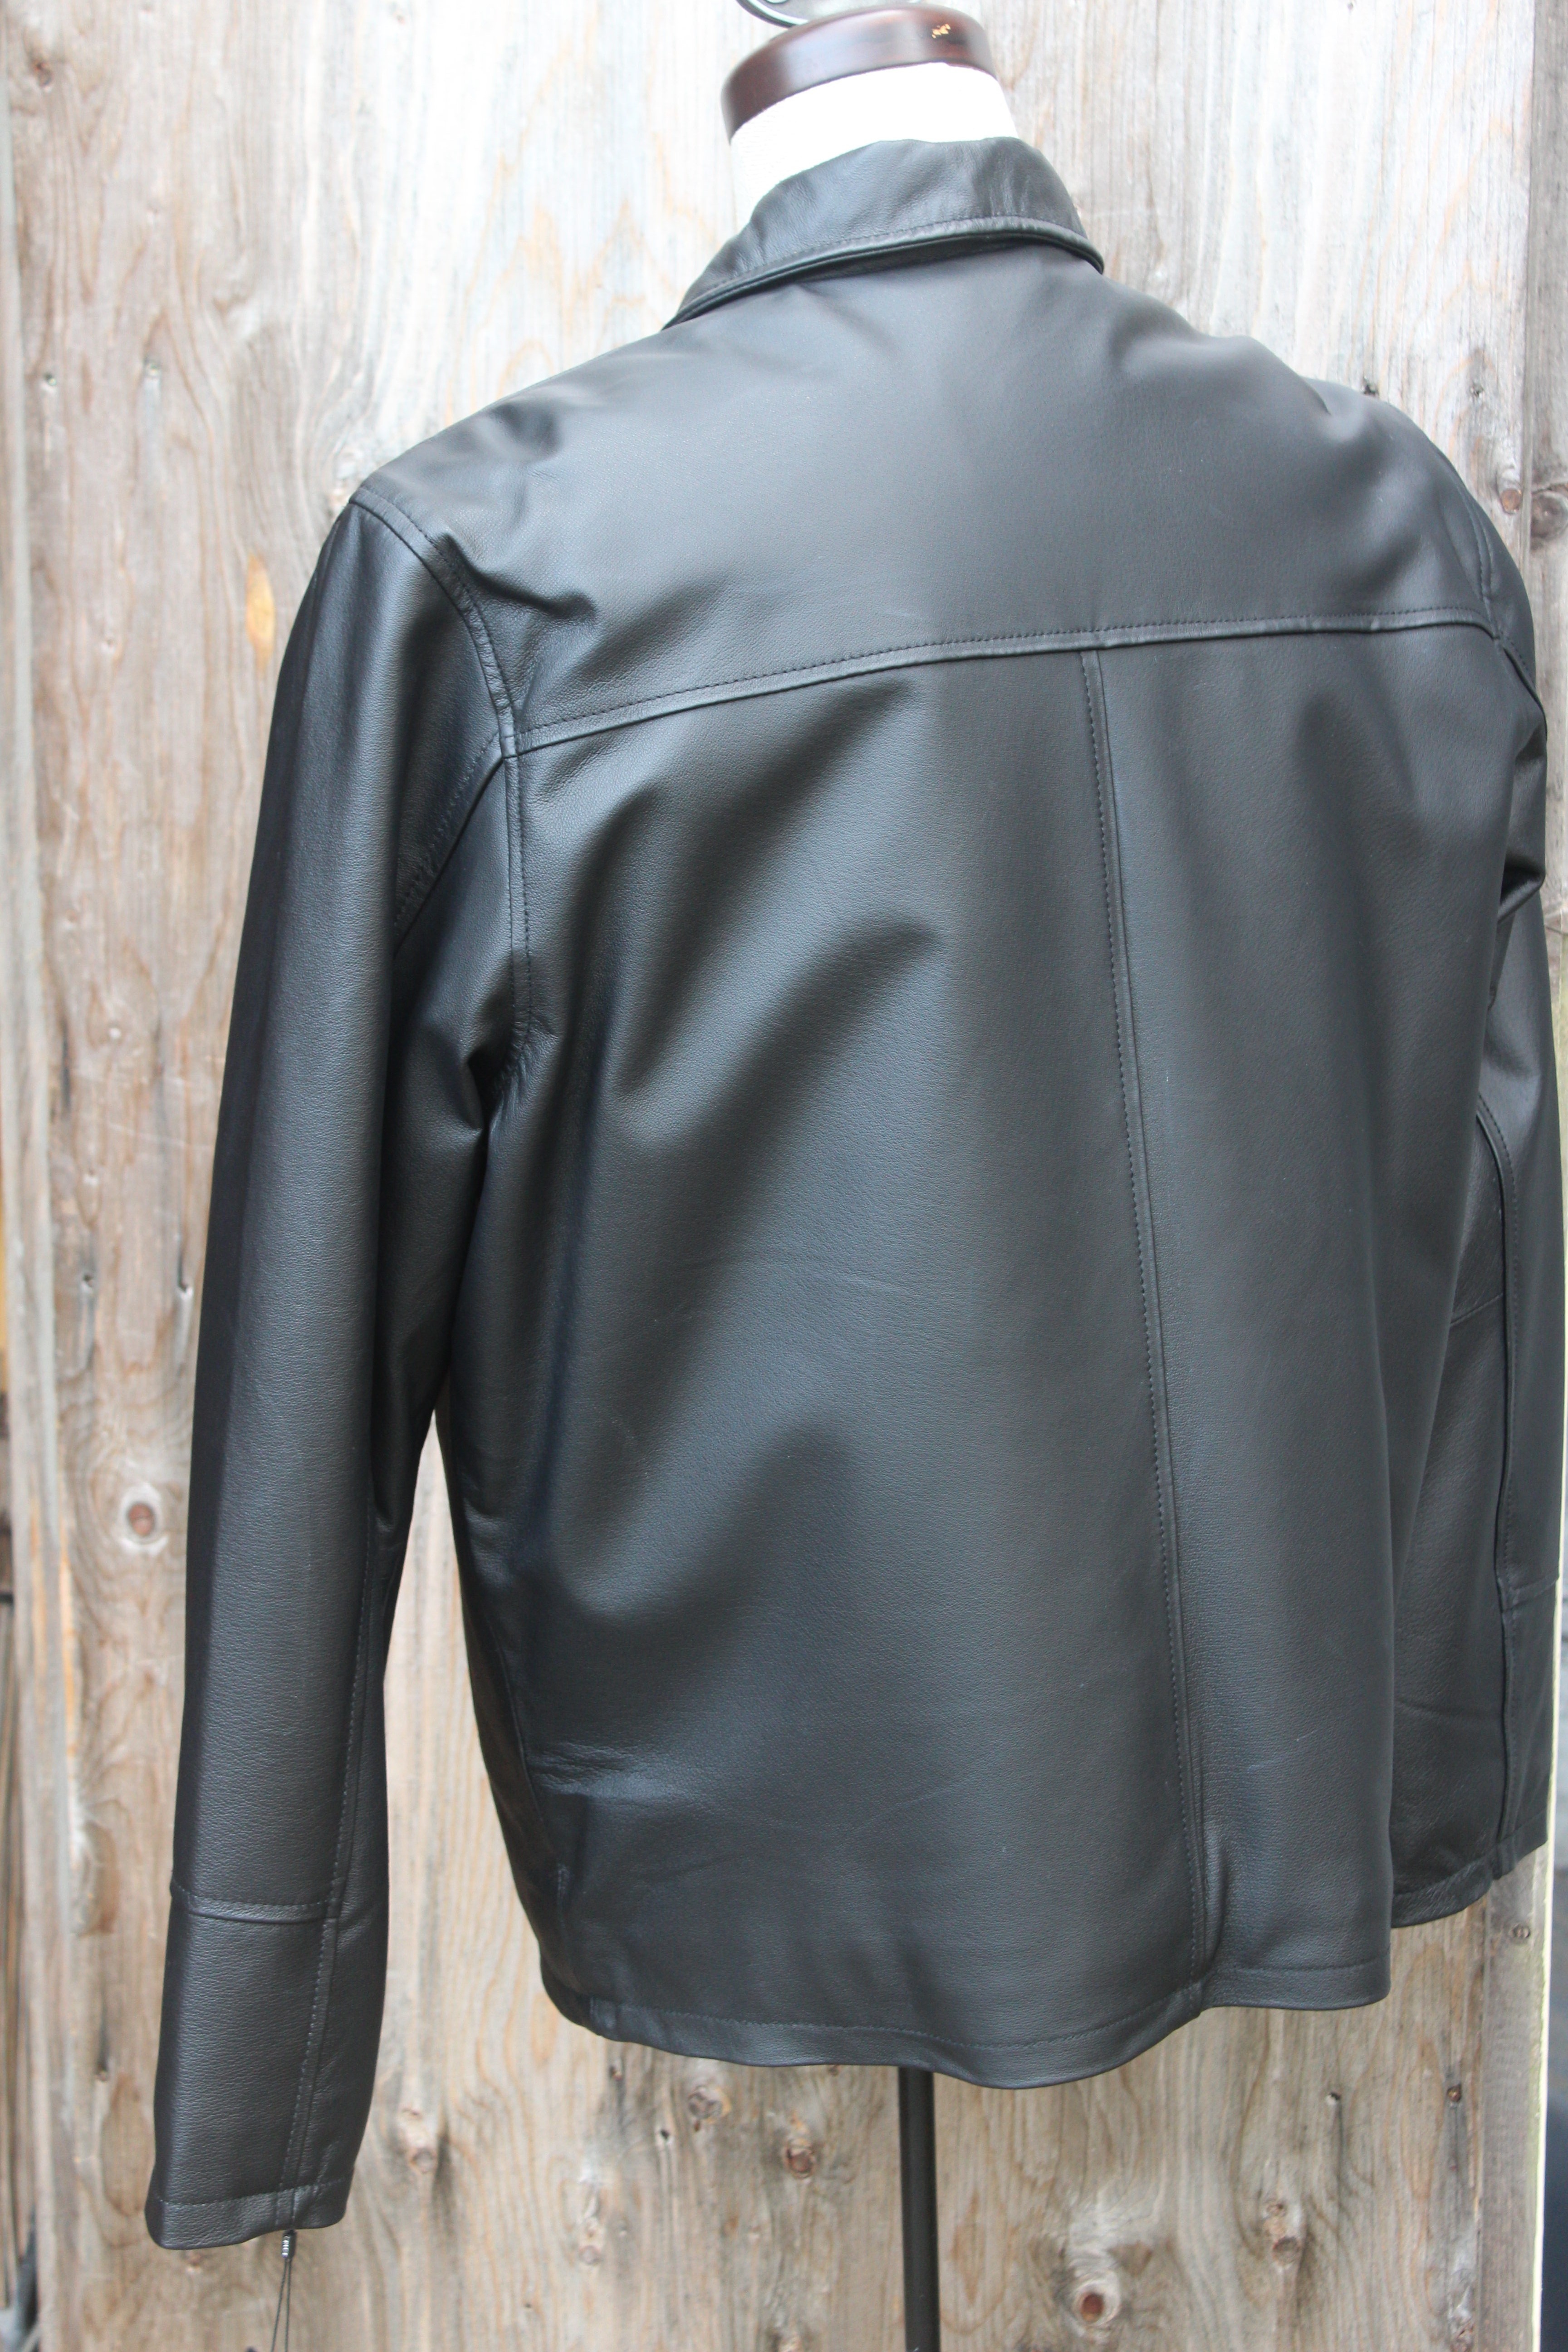 Black Leather $350.00
Plonge Leathers
Style#:  27507BK